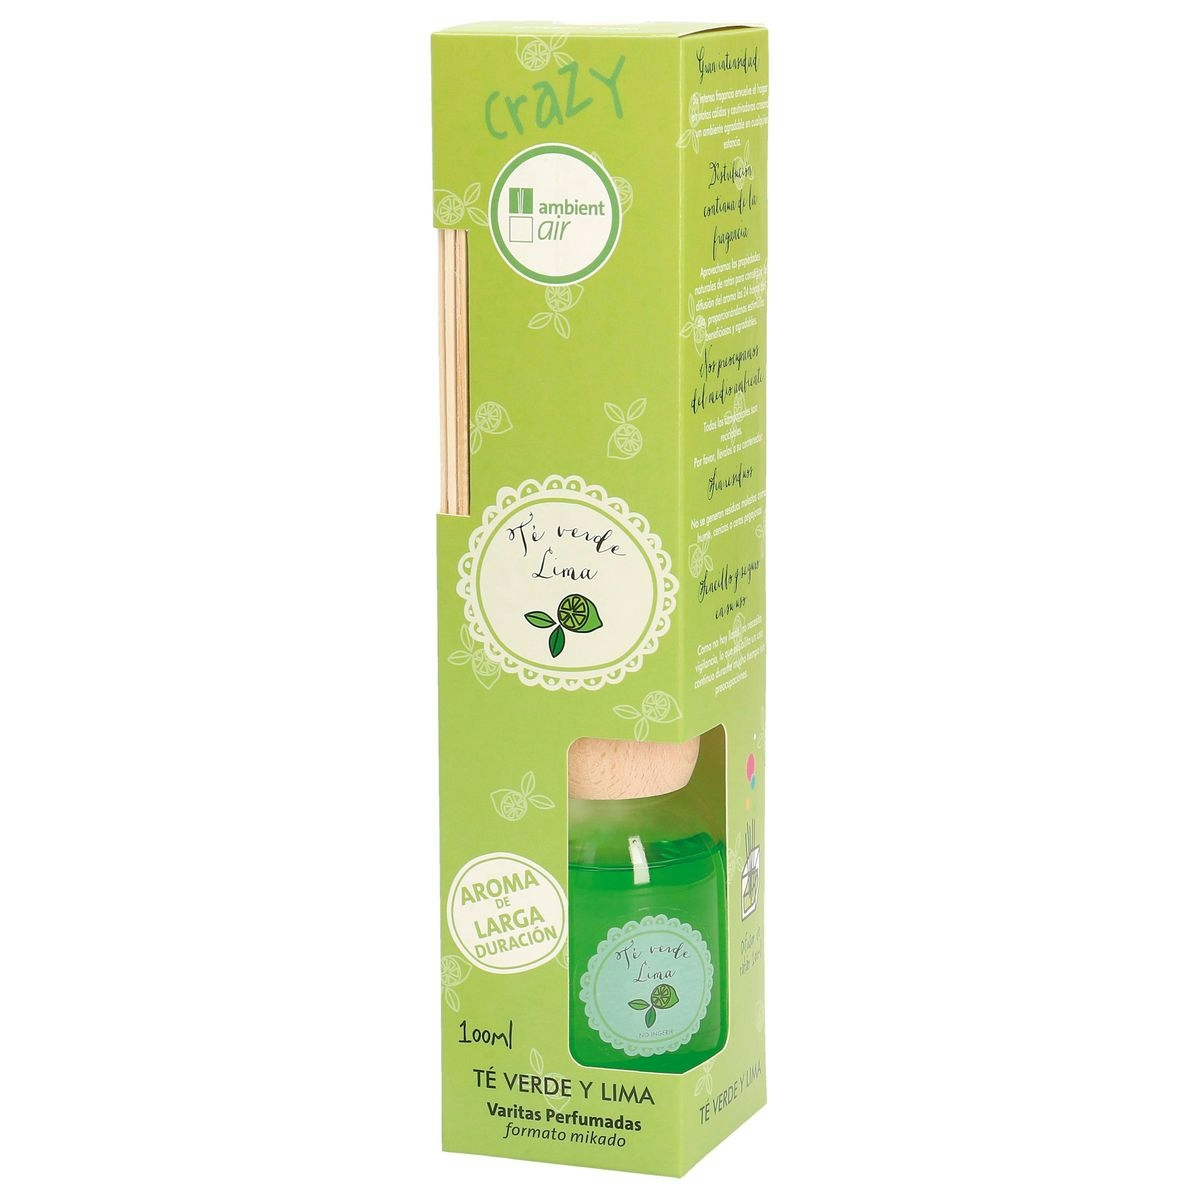 Ambientador air CRAZY aroma té verde/lima - 100 ml